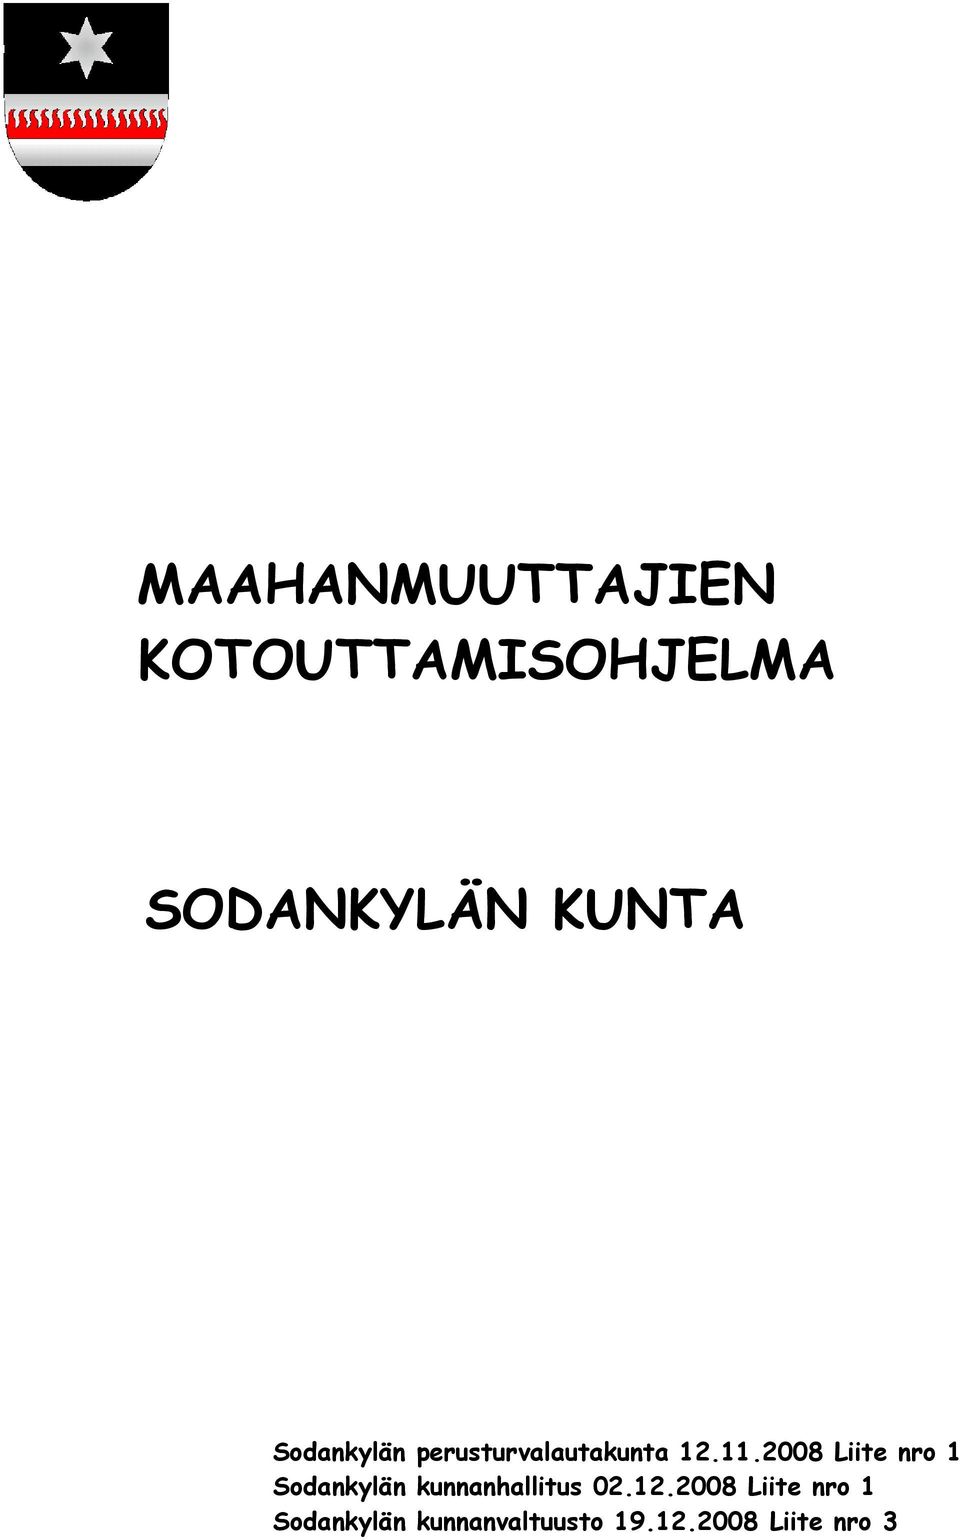 2008 Liite nro 1 Sodankylän kunnanhallitus 02.12.